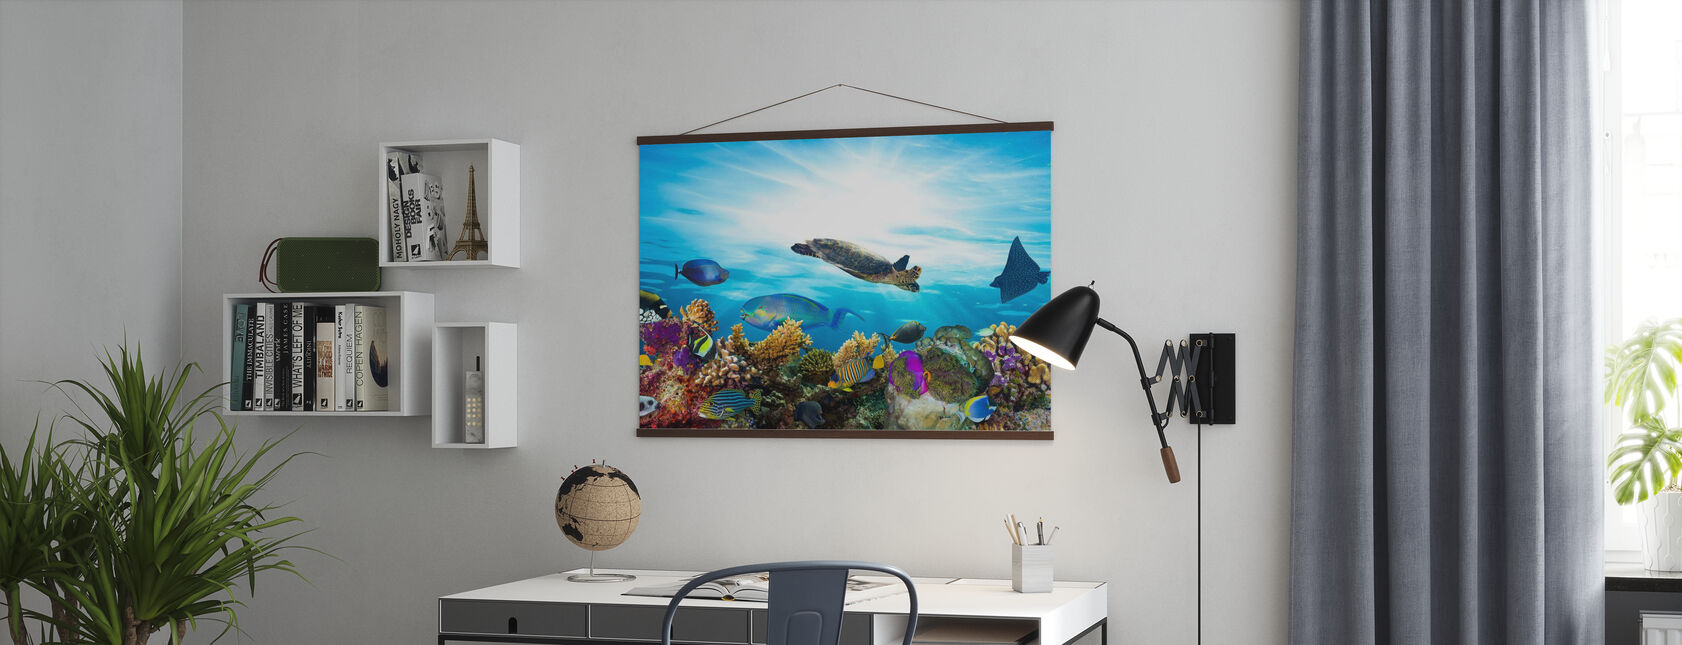 Koral Reef Panorama - Plakat - Kontor